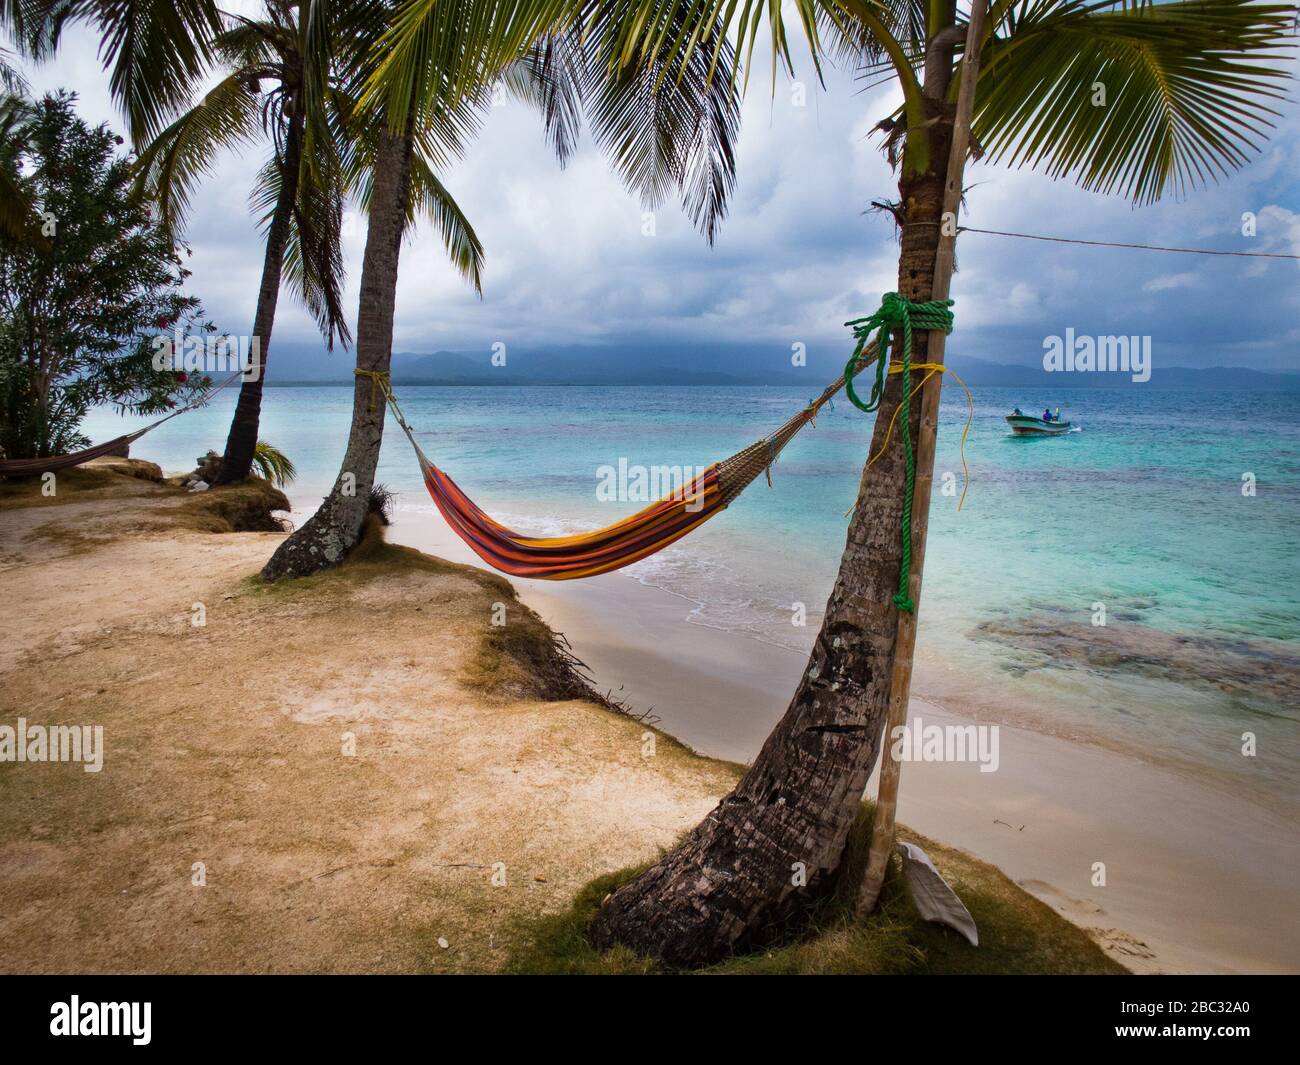 Un hamac se trouve entre deux palmiers à noix de coco au bord de l'eau sur une île de l'océan des Caraïbes. Un bateau de pêche approche à la distance. Banque D'Images